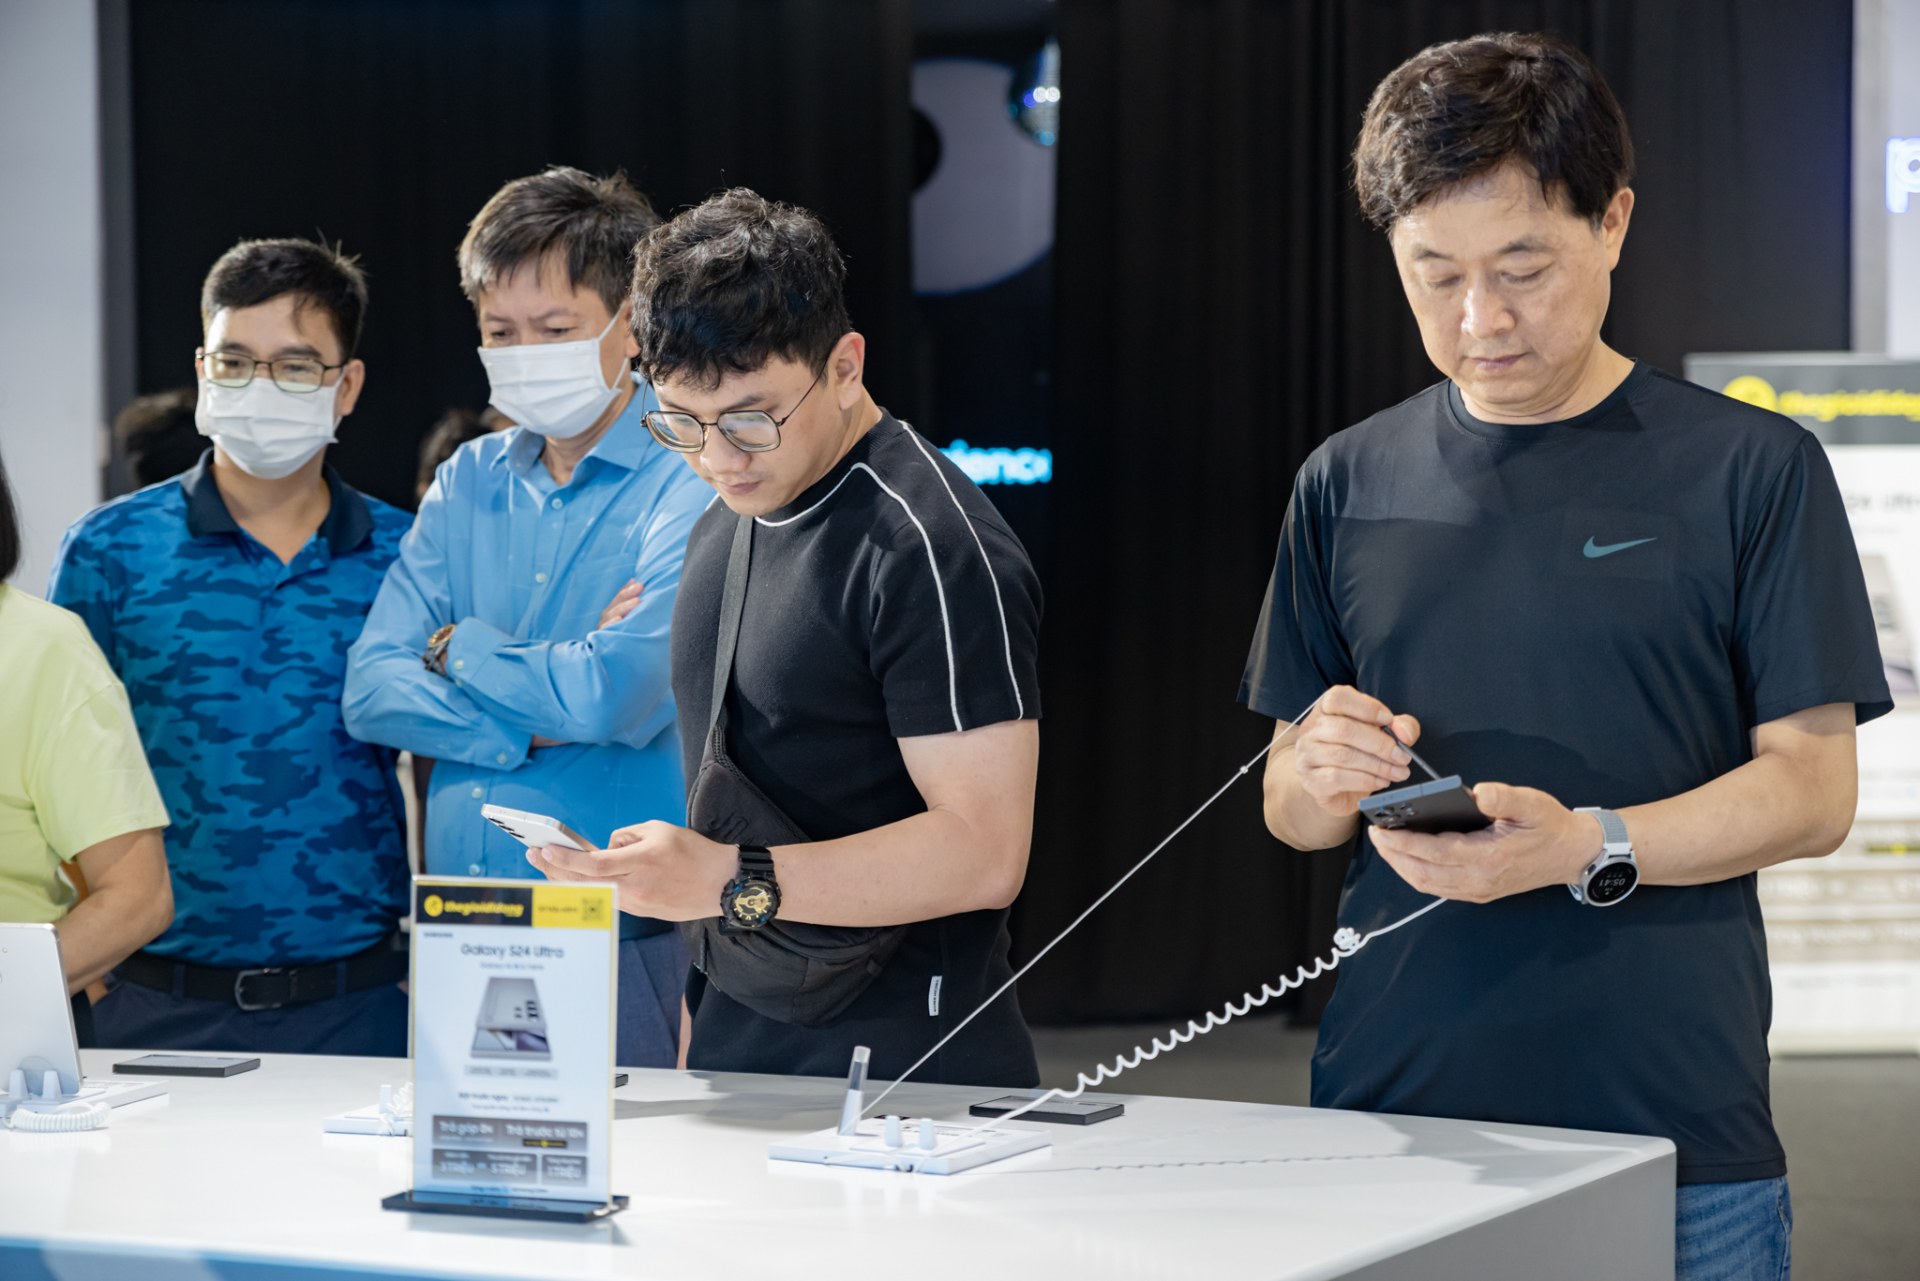 Đặc quyền dành cho Samfan từ Samsung: cùng chuyên gia vén màn kỷ nguyên mới với 'Galaxy AI' - ảnh 5